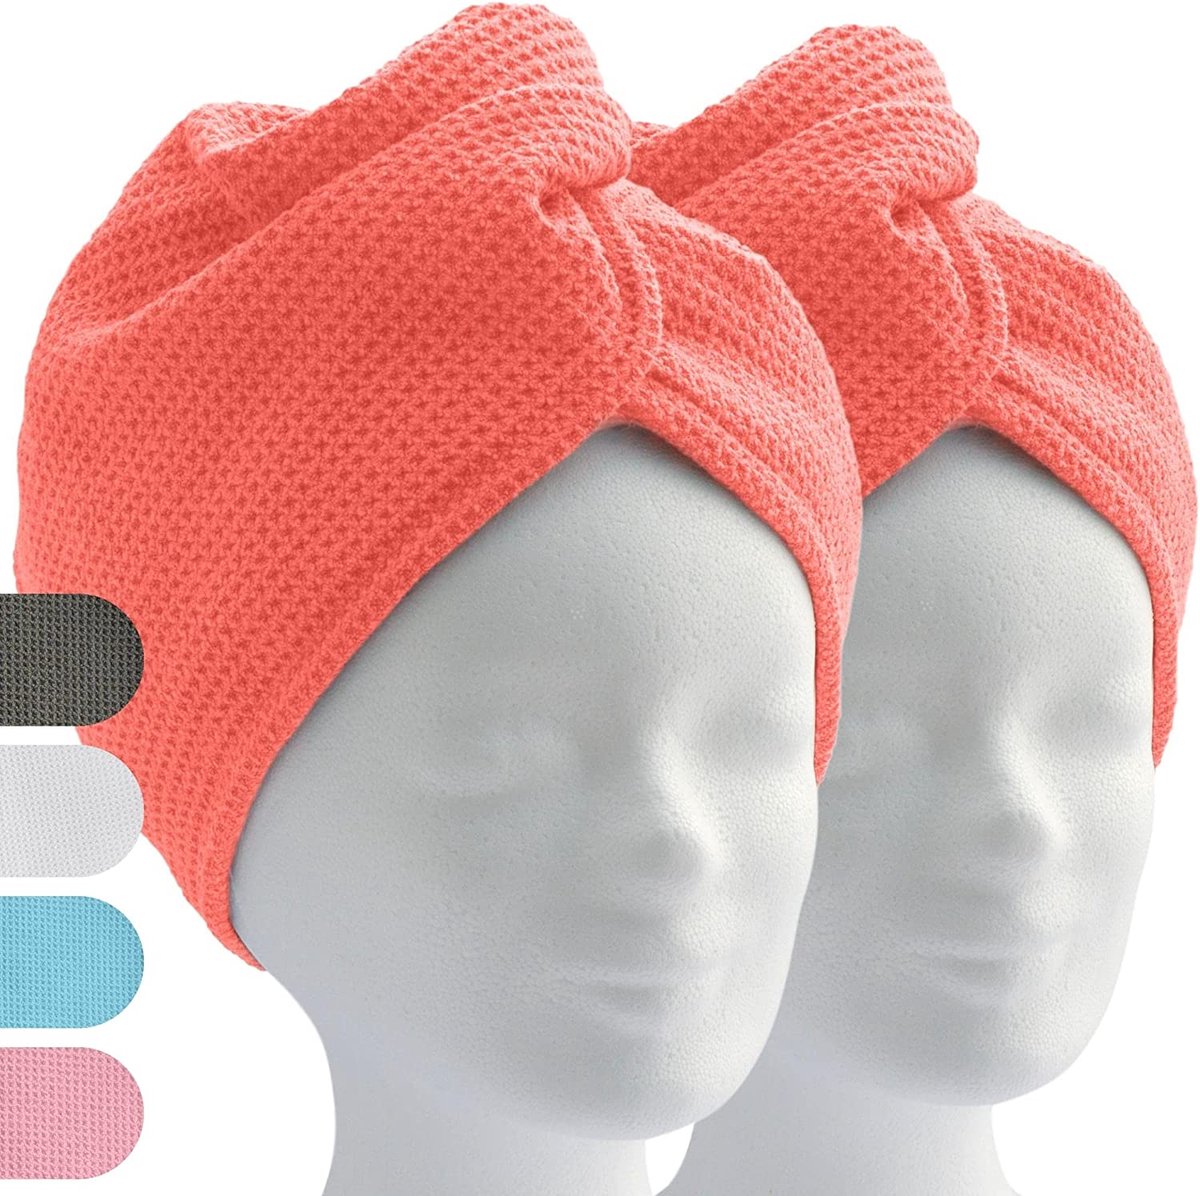 ELEXACARE haartulband, tulband handdoek met knoop (2 stuks, koraalrood / oranje), microvezel handdoek voor hoofd en lang haar